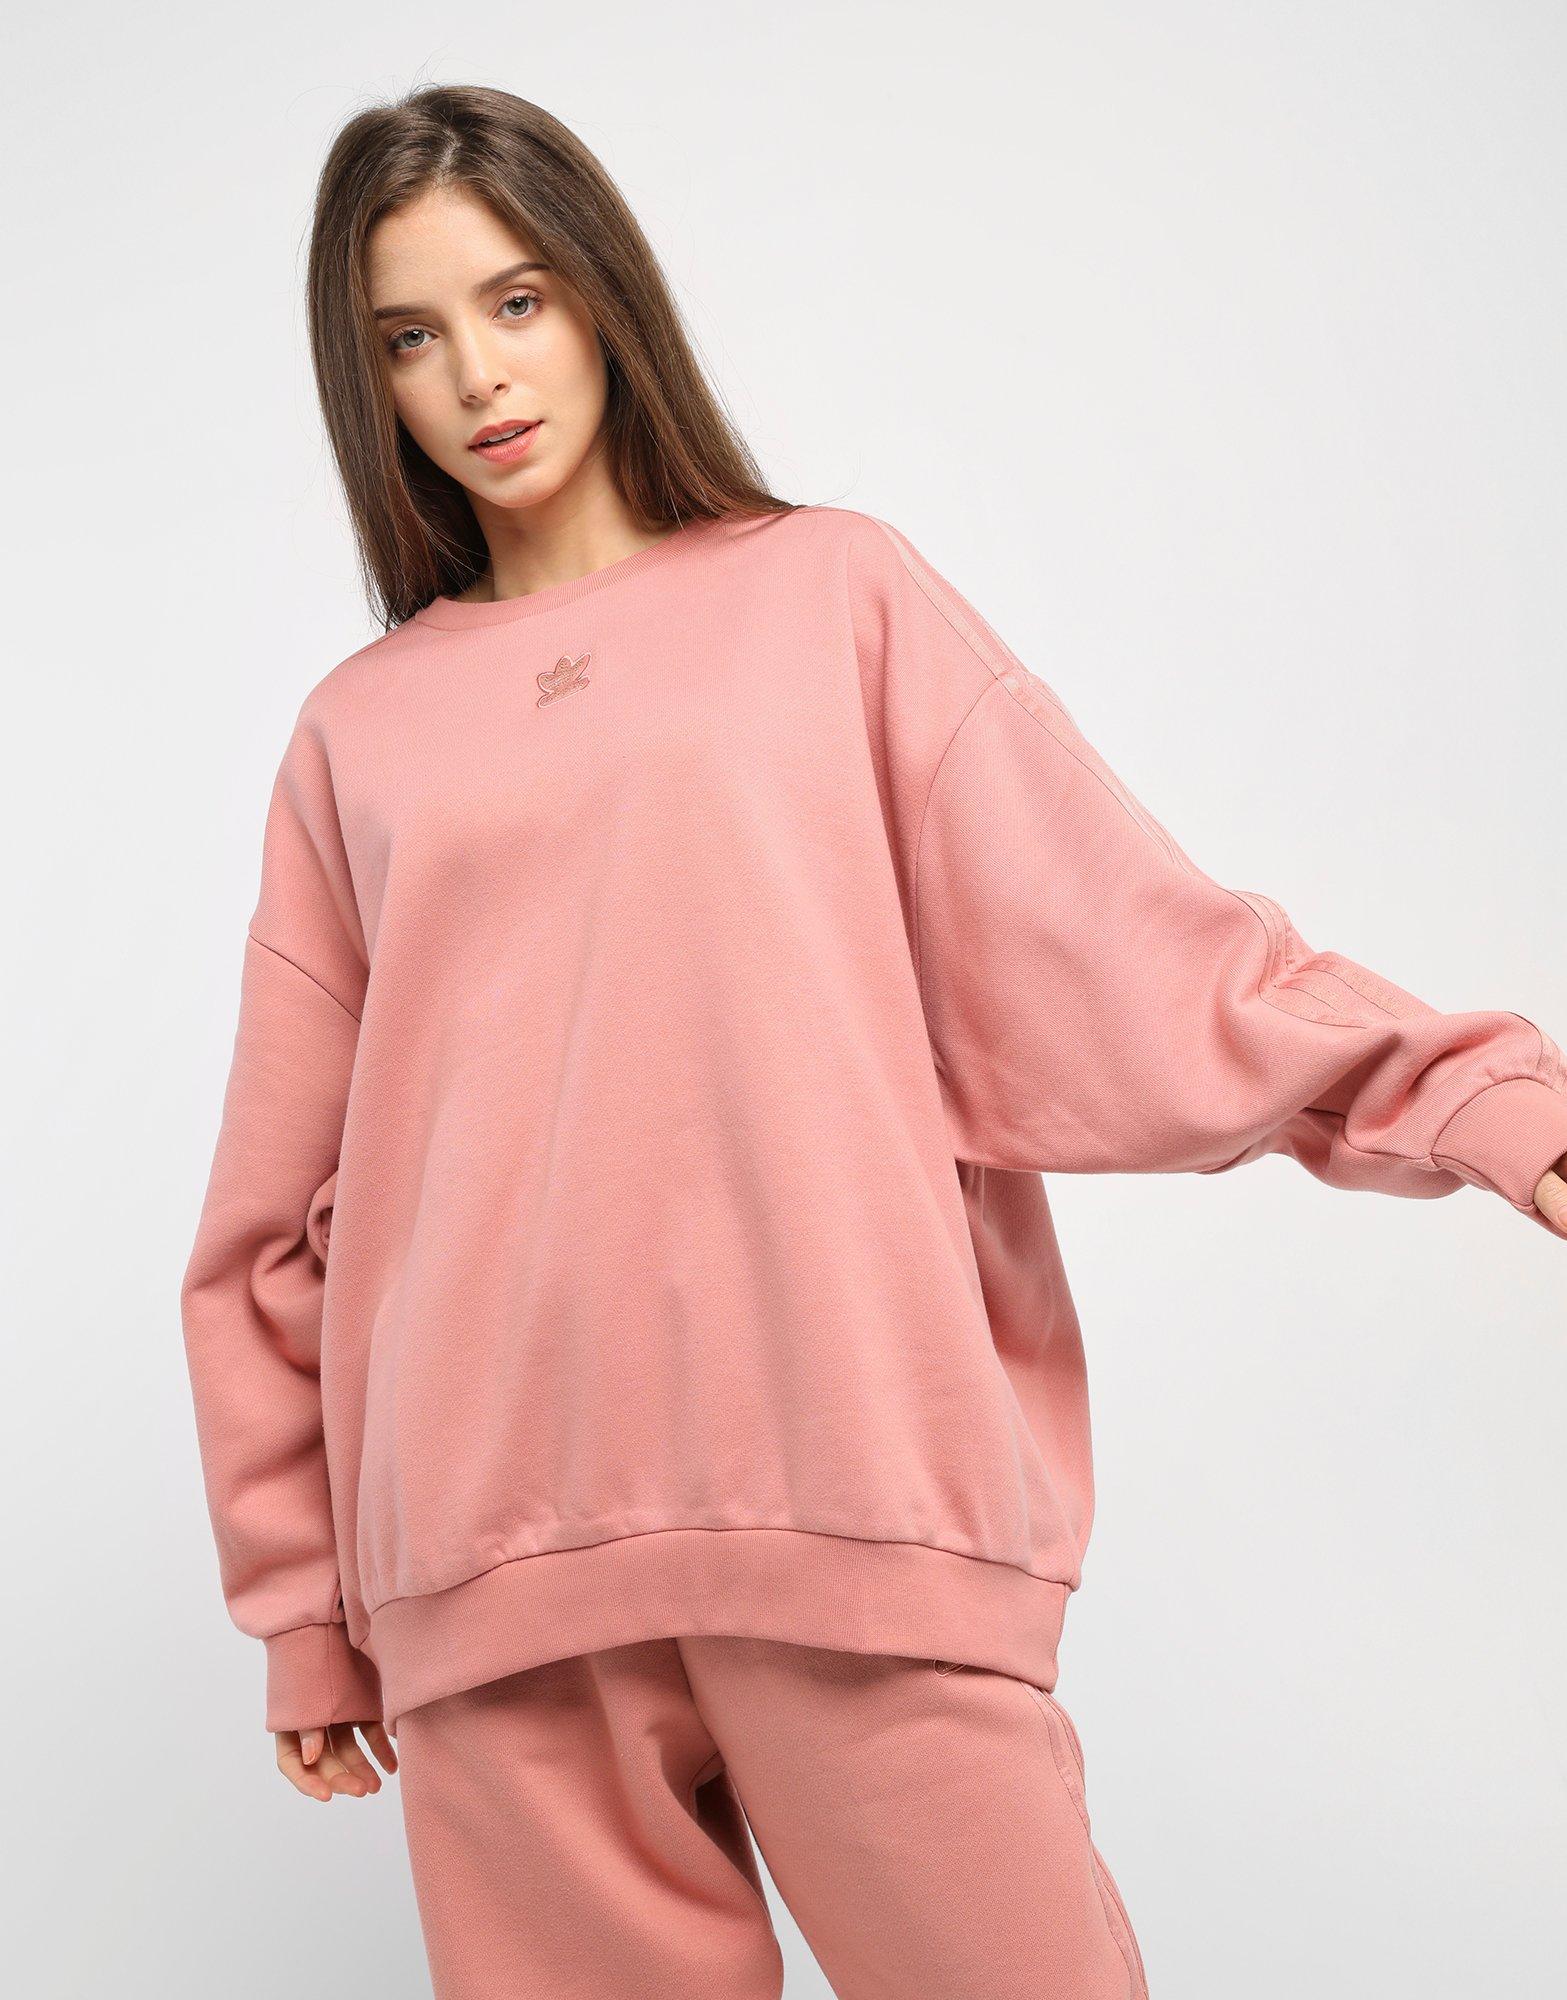 adidas pink oversized sweatshirt